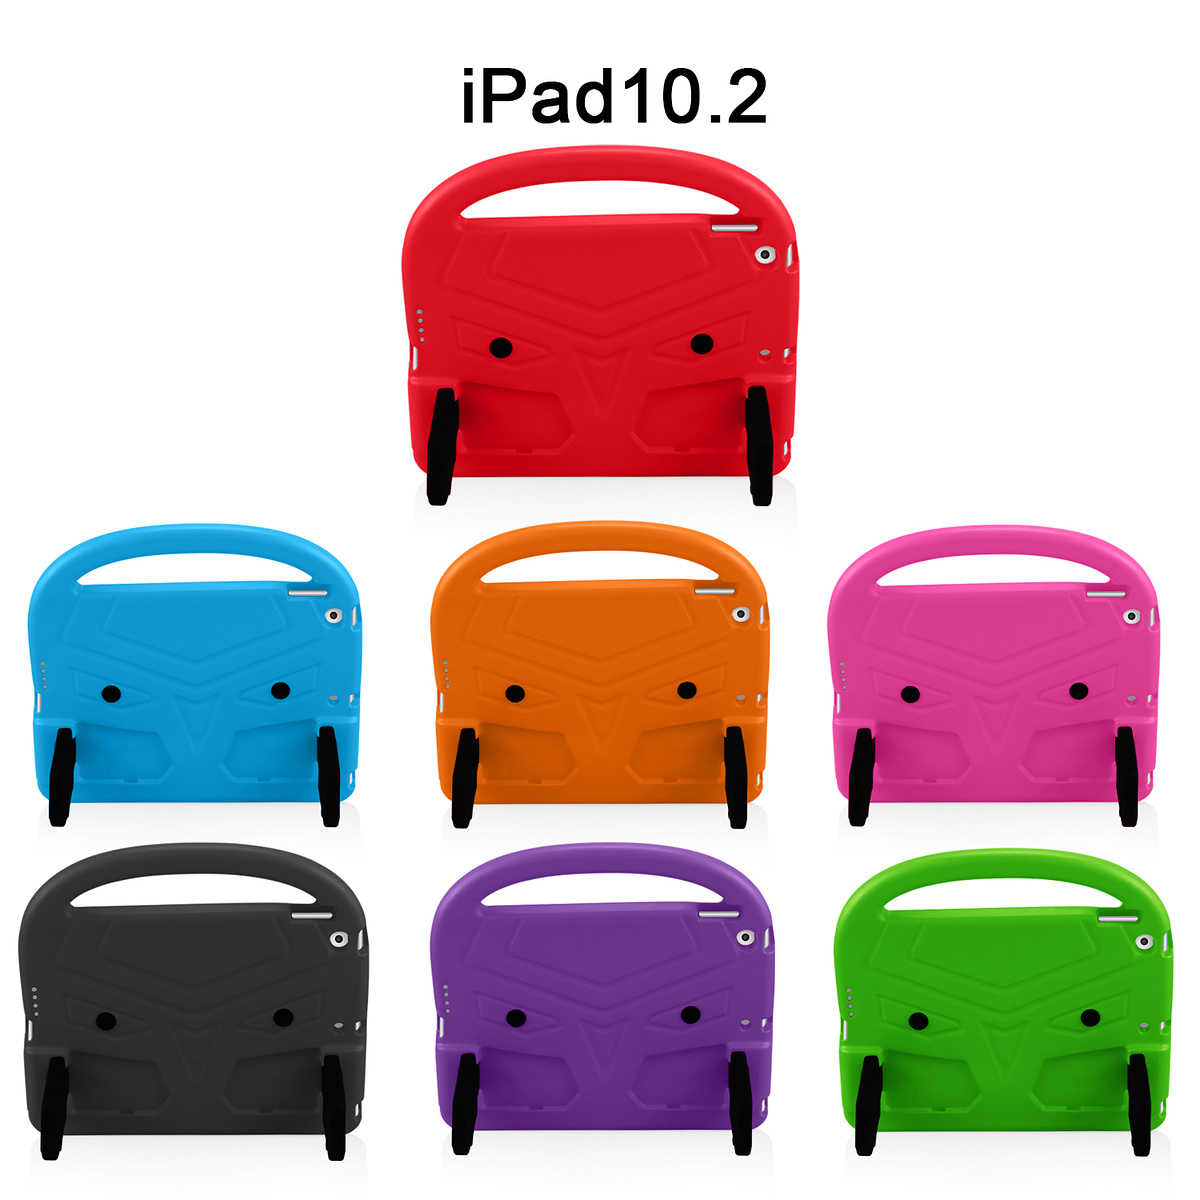 Barnfodral med ställ, iPad 10.2 / Pro 10.5 / Air 3, röd